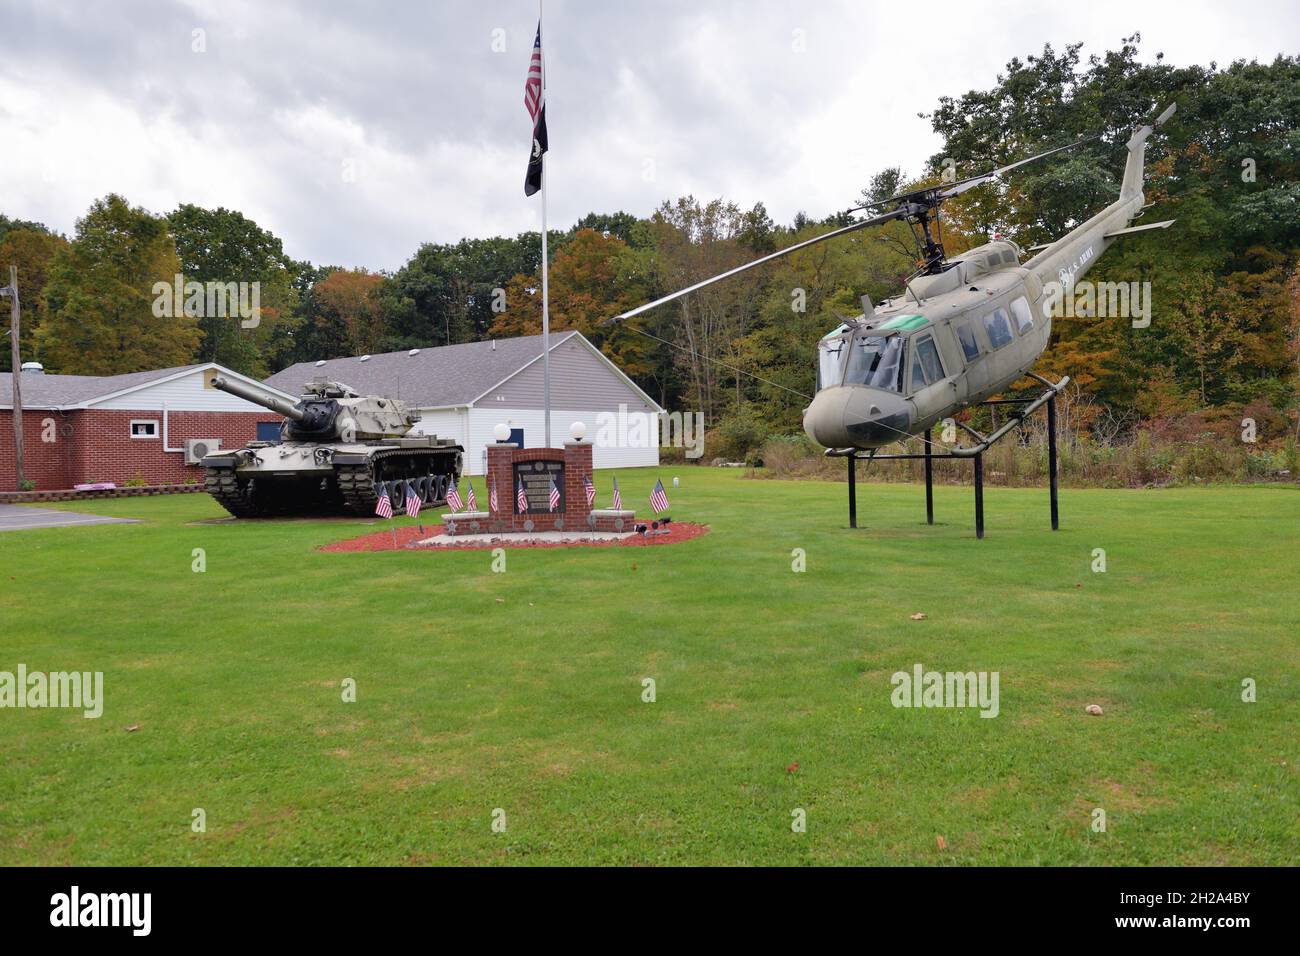 Stoystown, Pennsylvanie, États-Unis.Hélicoptère Bell UH-1 Iroquois, également connu sous le nom d'hélicoptère Huey exposé à l'extérieur d'un poste de la Légion américaine. Banque D'Images